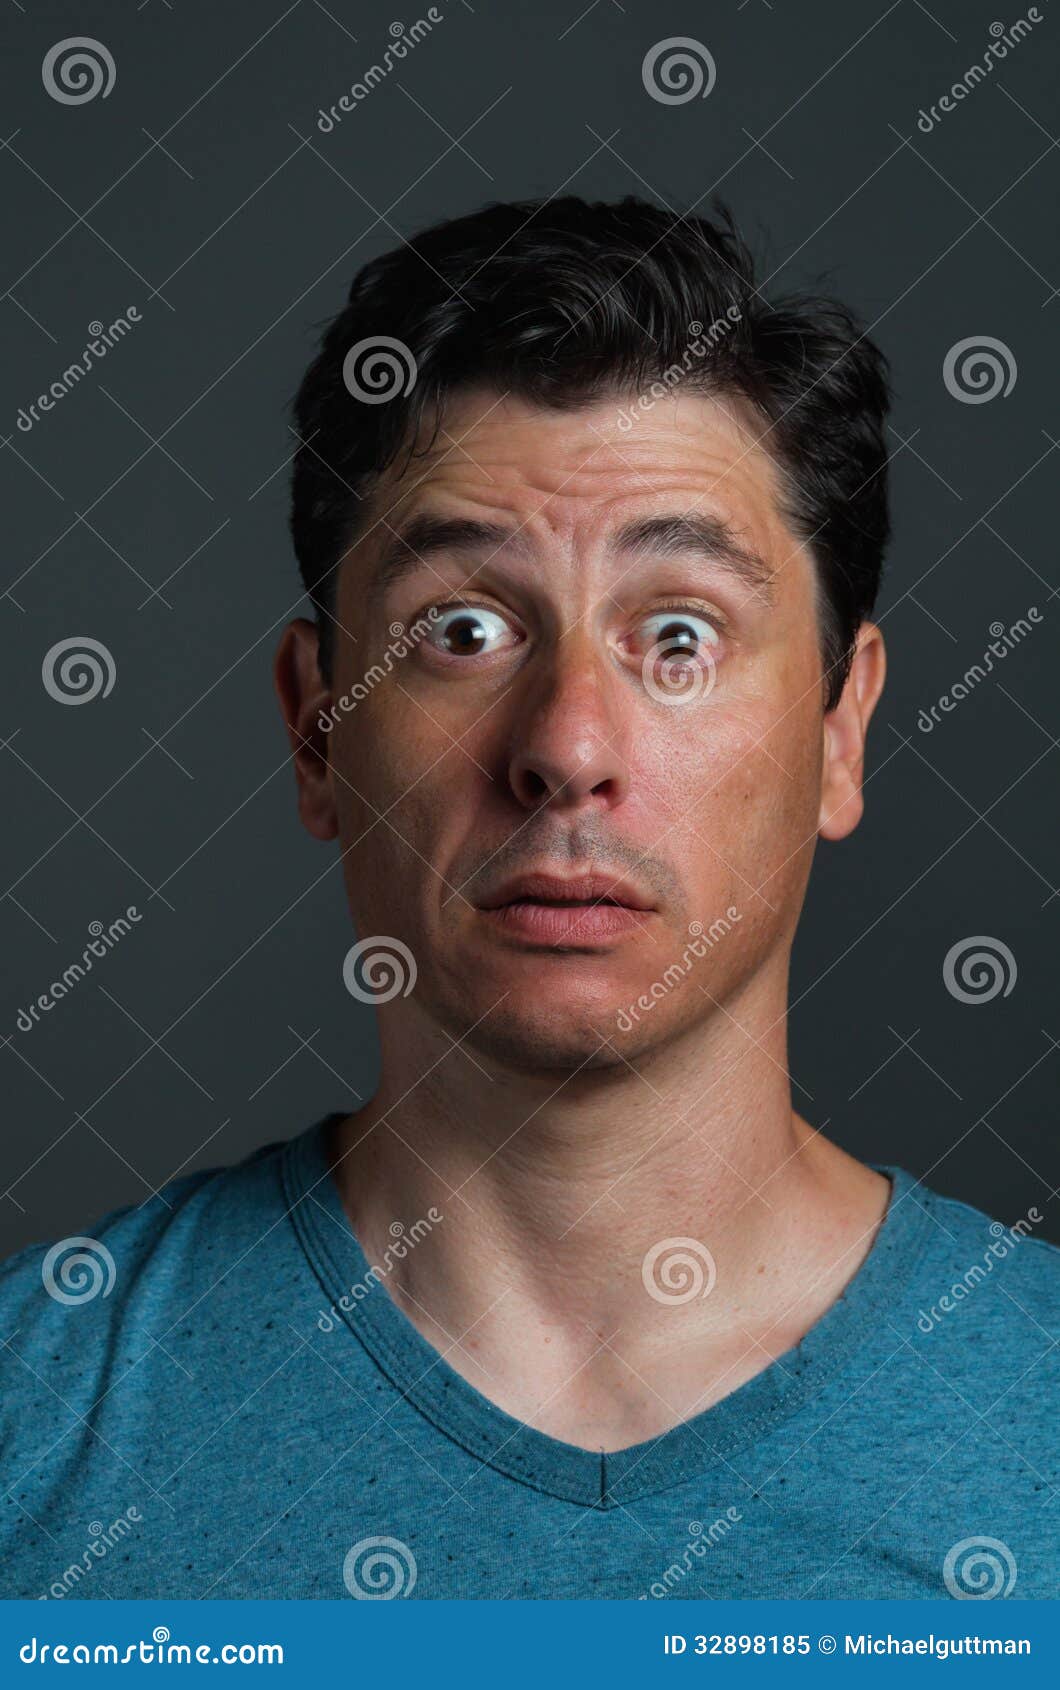 Surprised Shocked Man stock image. Image of eyes, surprised - 32898185